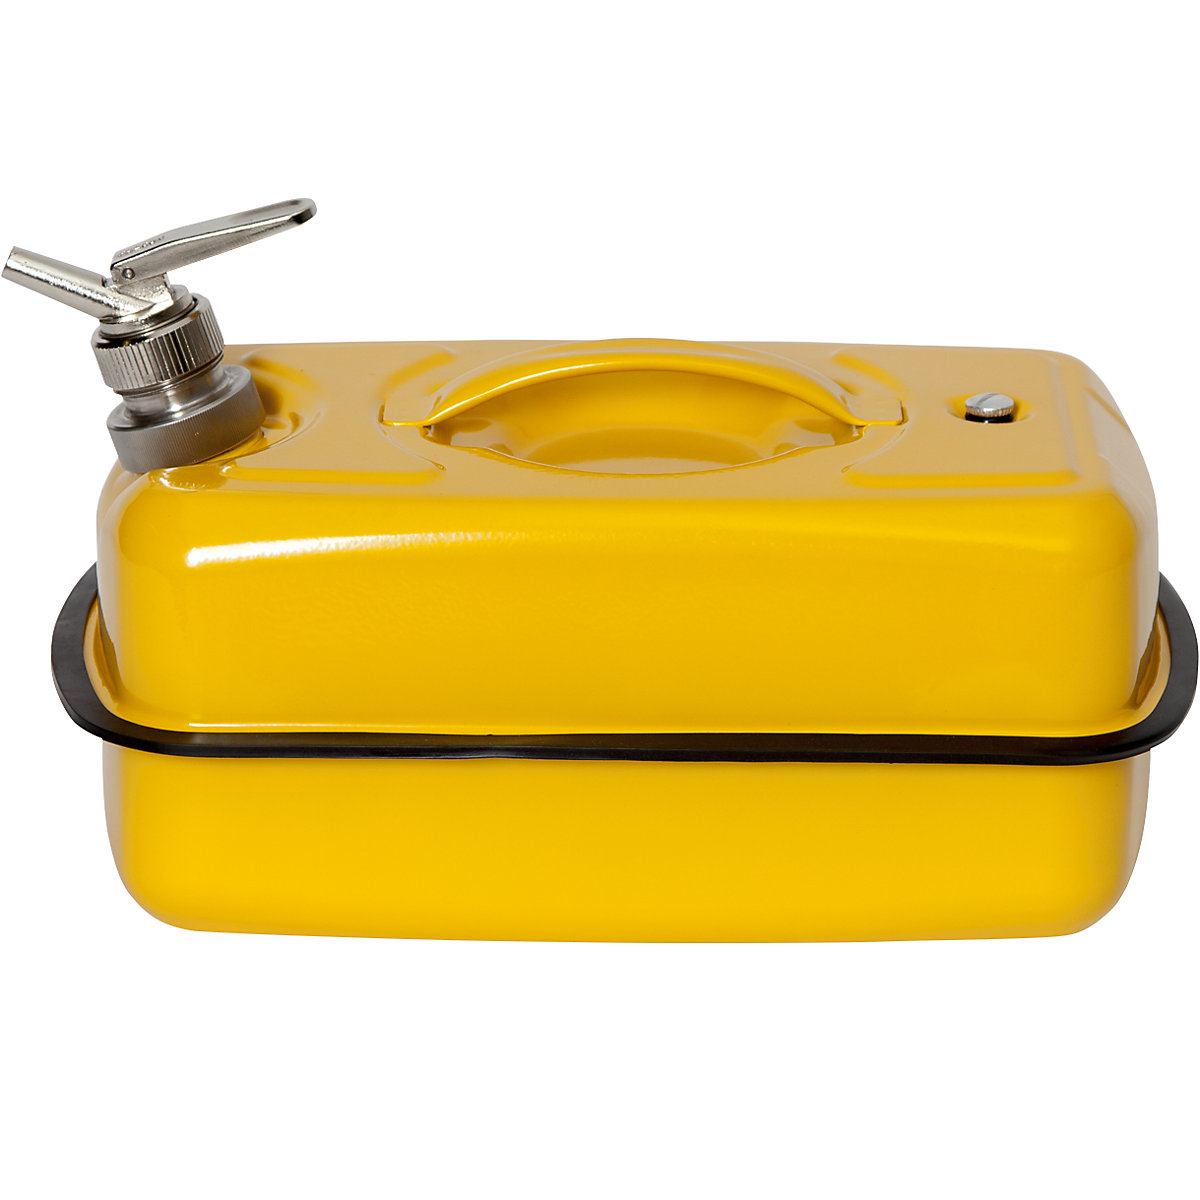 FALCON – Canistră de siguranță plată cu robinet pentru dozare fină (Imagine produs 8)